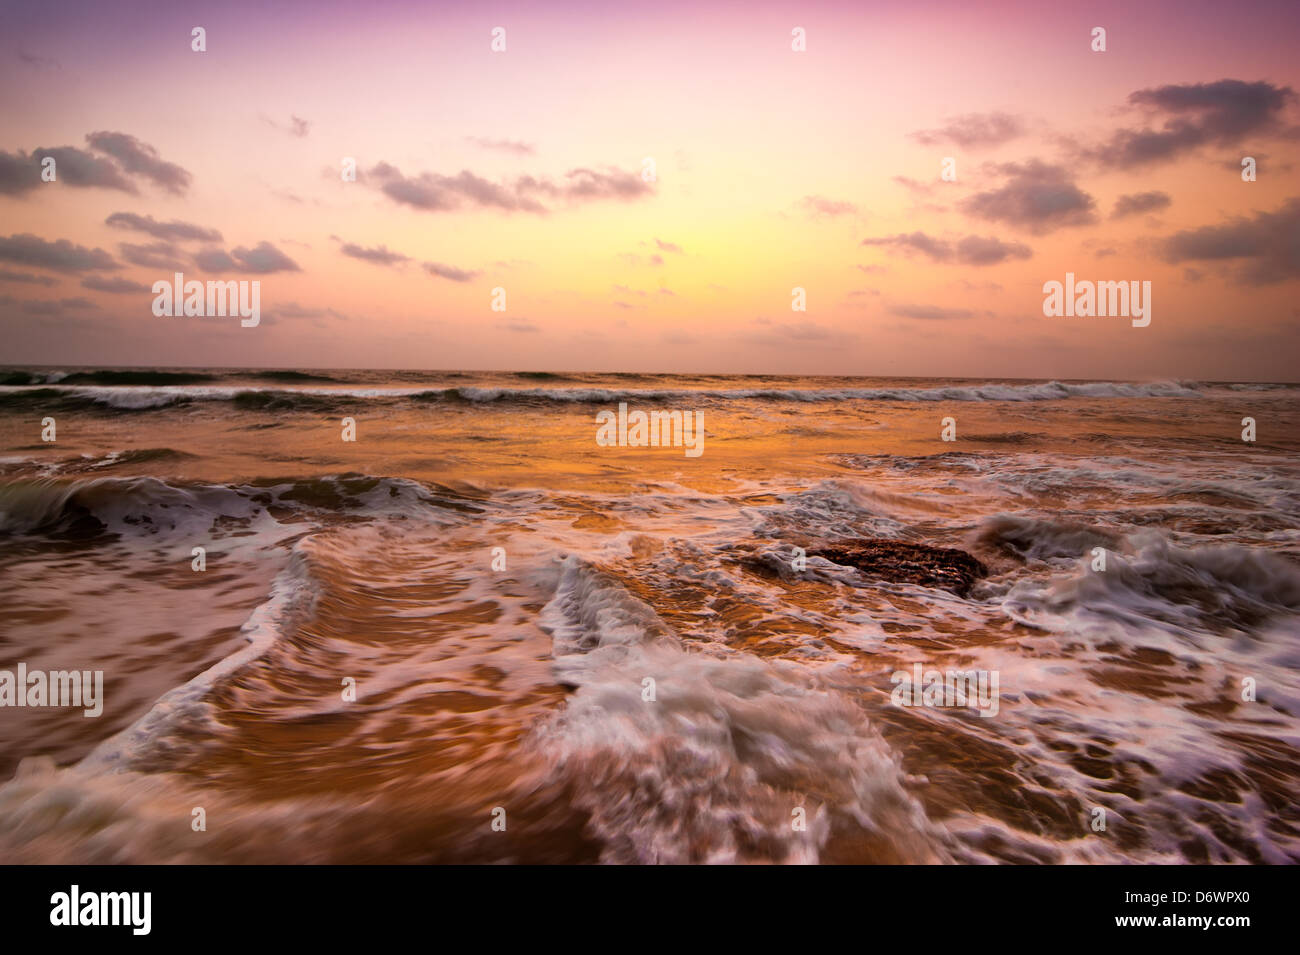 Tramonto a spiaggia tropicale. Oceano costa sabbiosa sotto il sole di sera. India del sud paesaggio Foto Stock